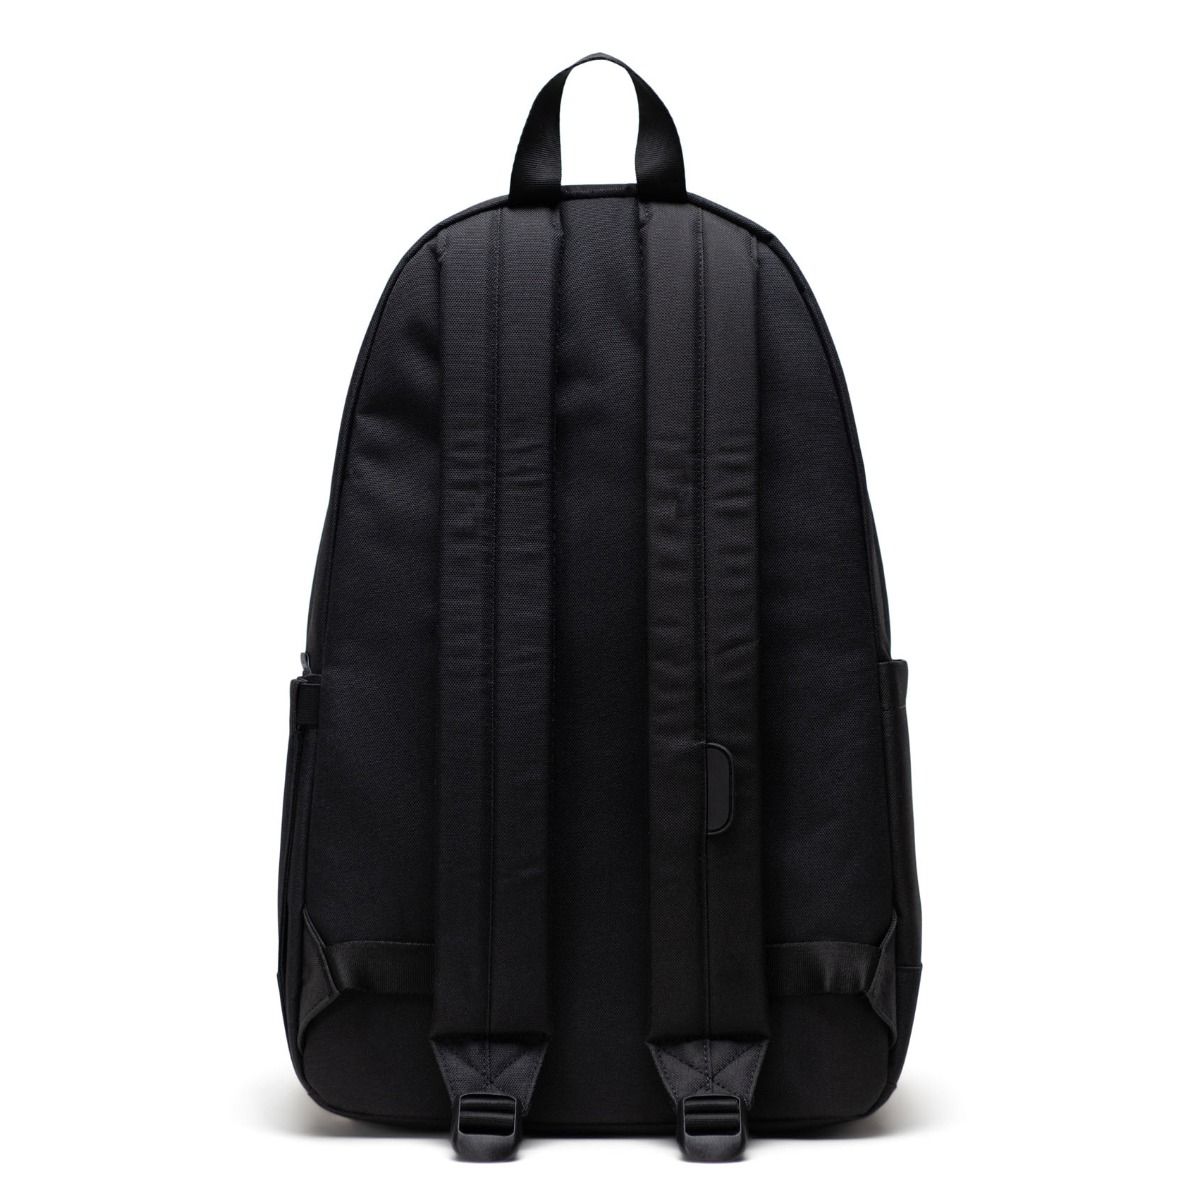 Herschel Heritage Backpack - Black Tonal